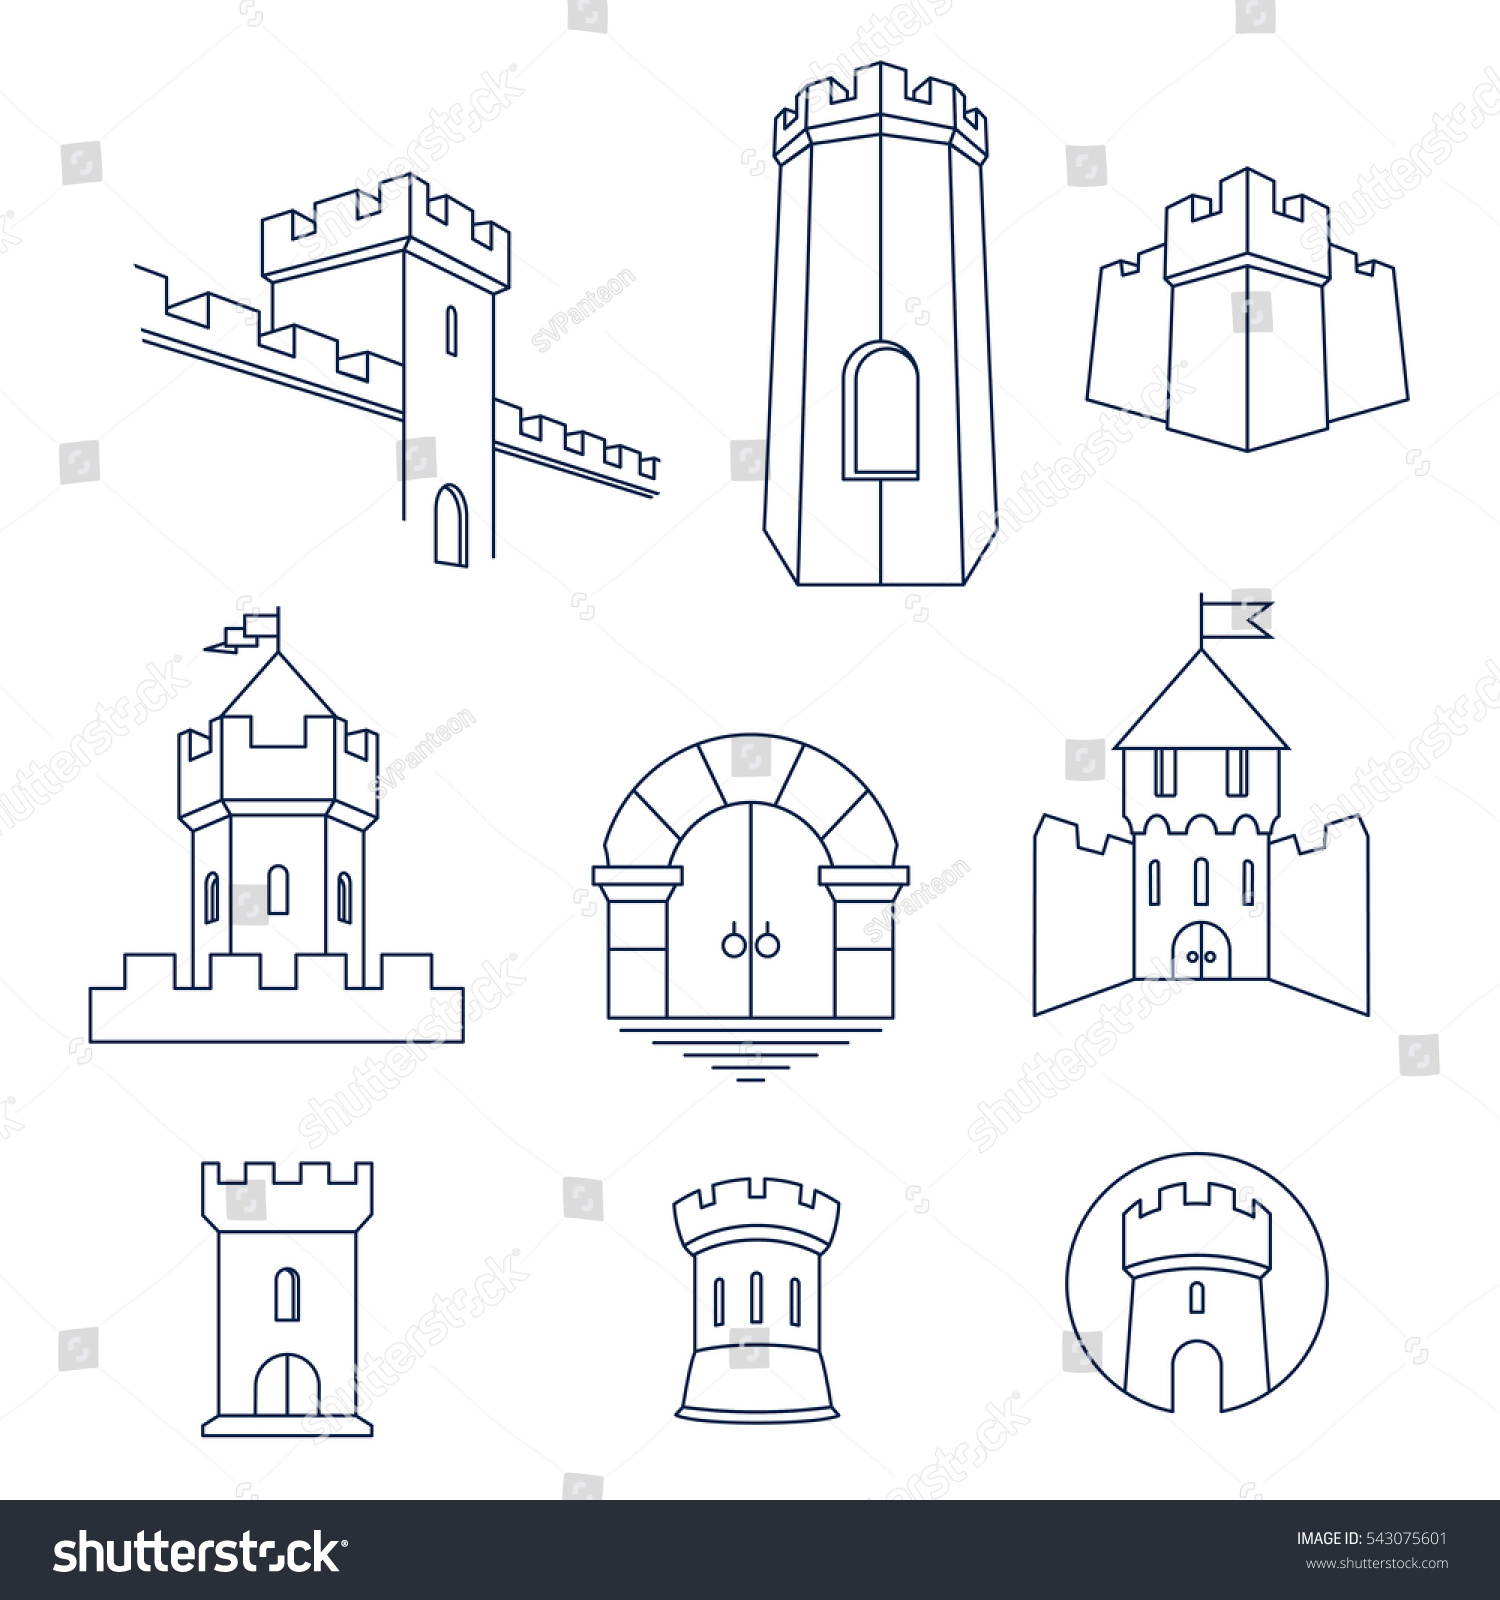 Схематичное изображение замка